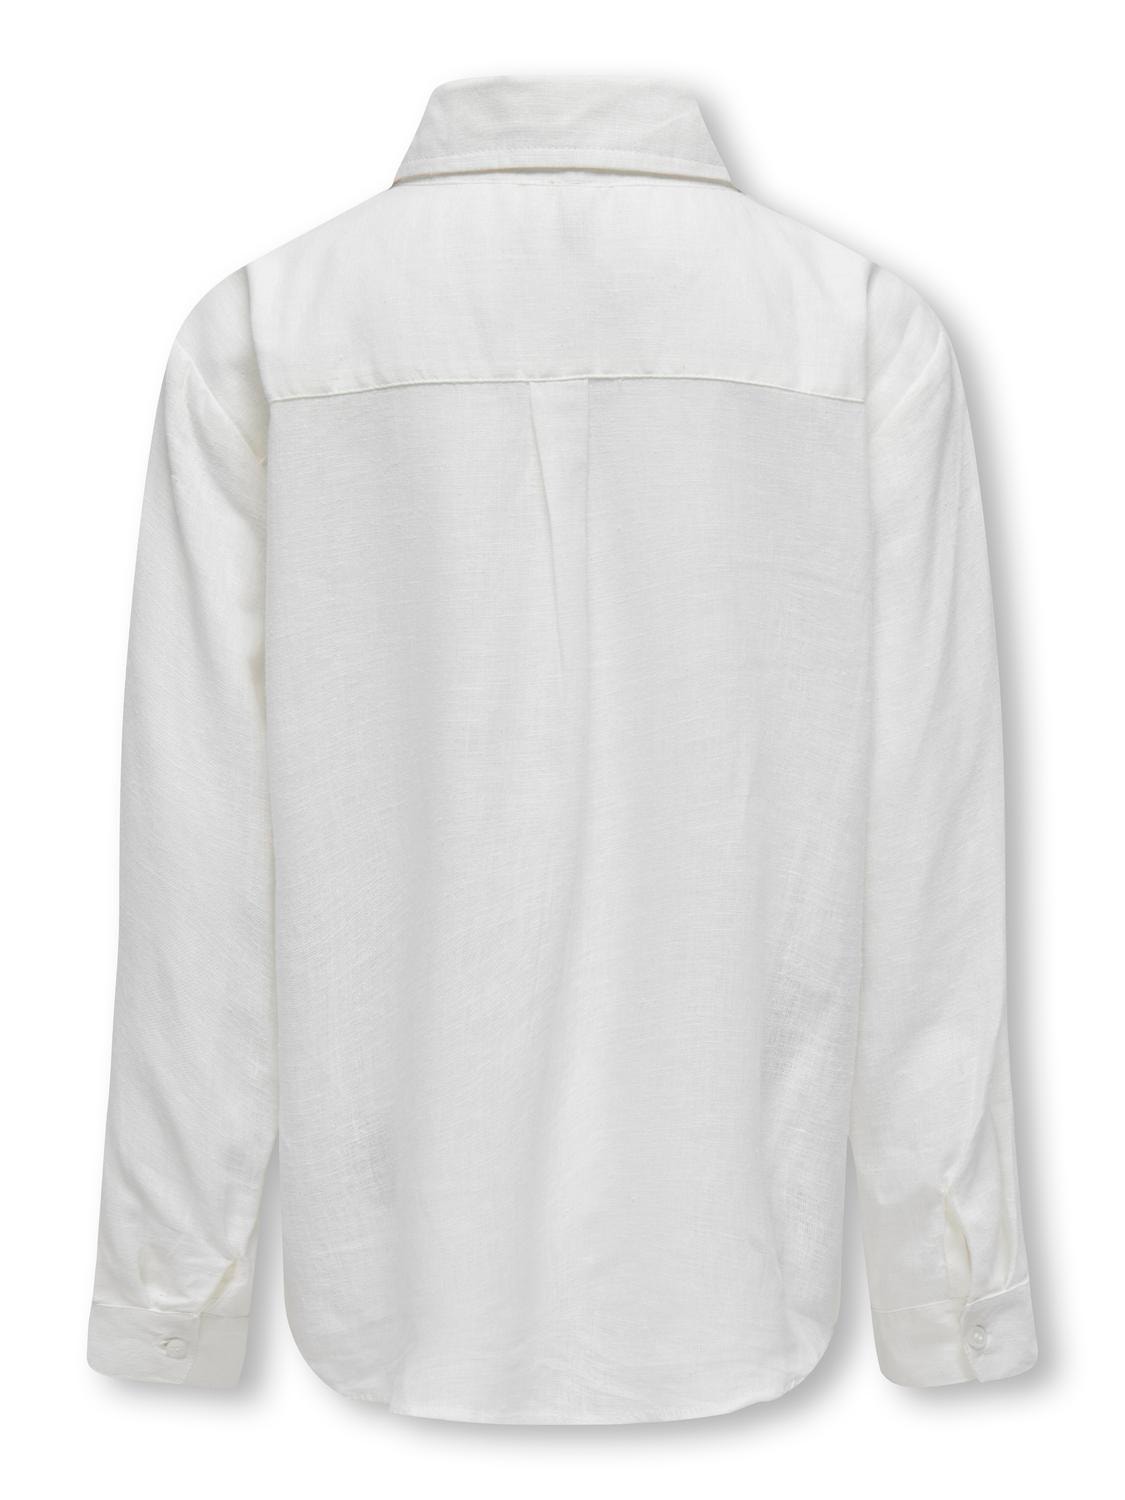 ONLY Camisas Corte regular Cuello de camisa Puños abotonados -Bright White - 15297052